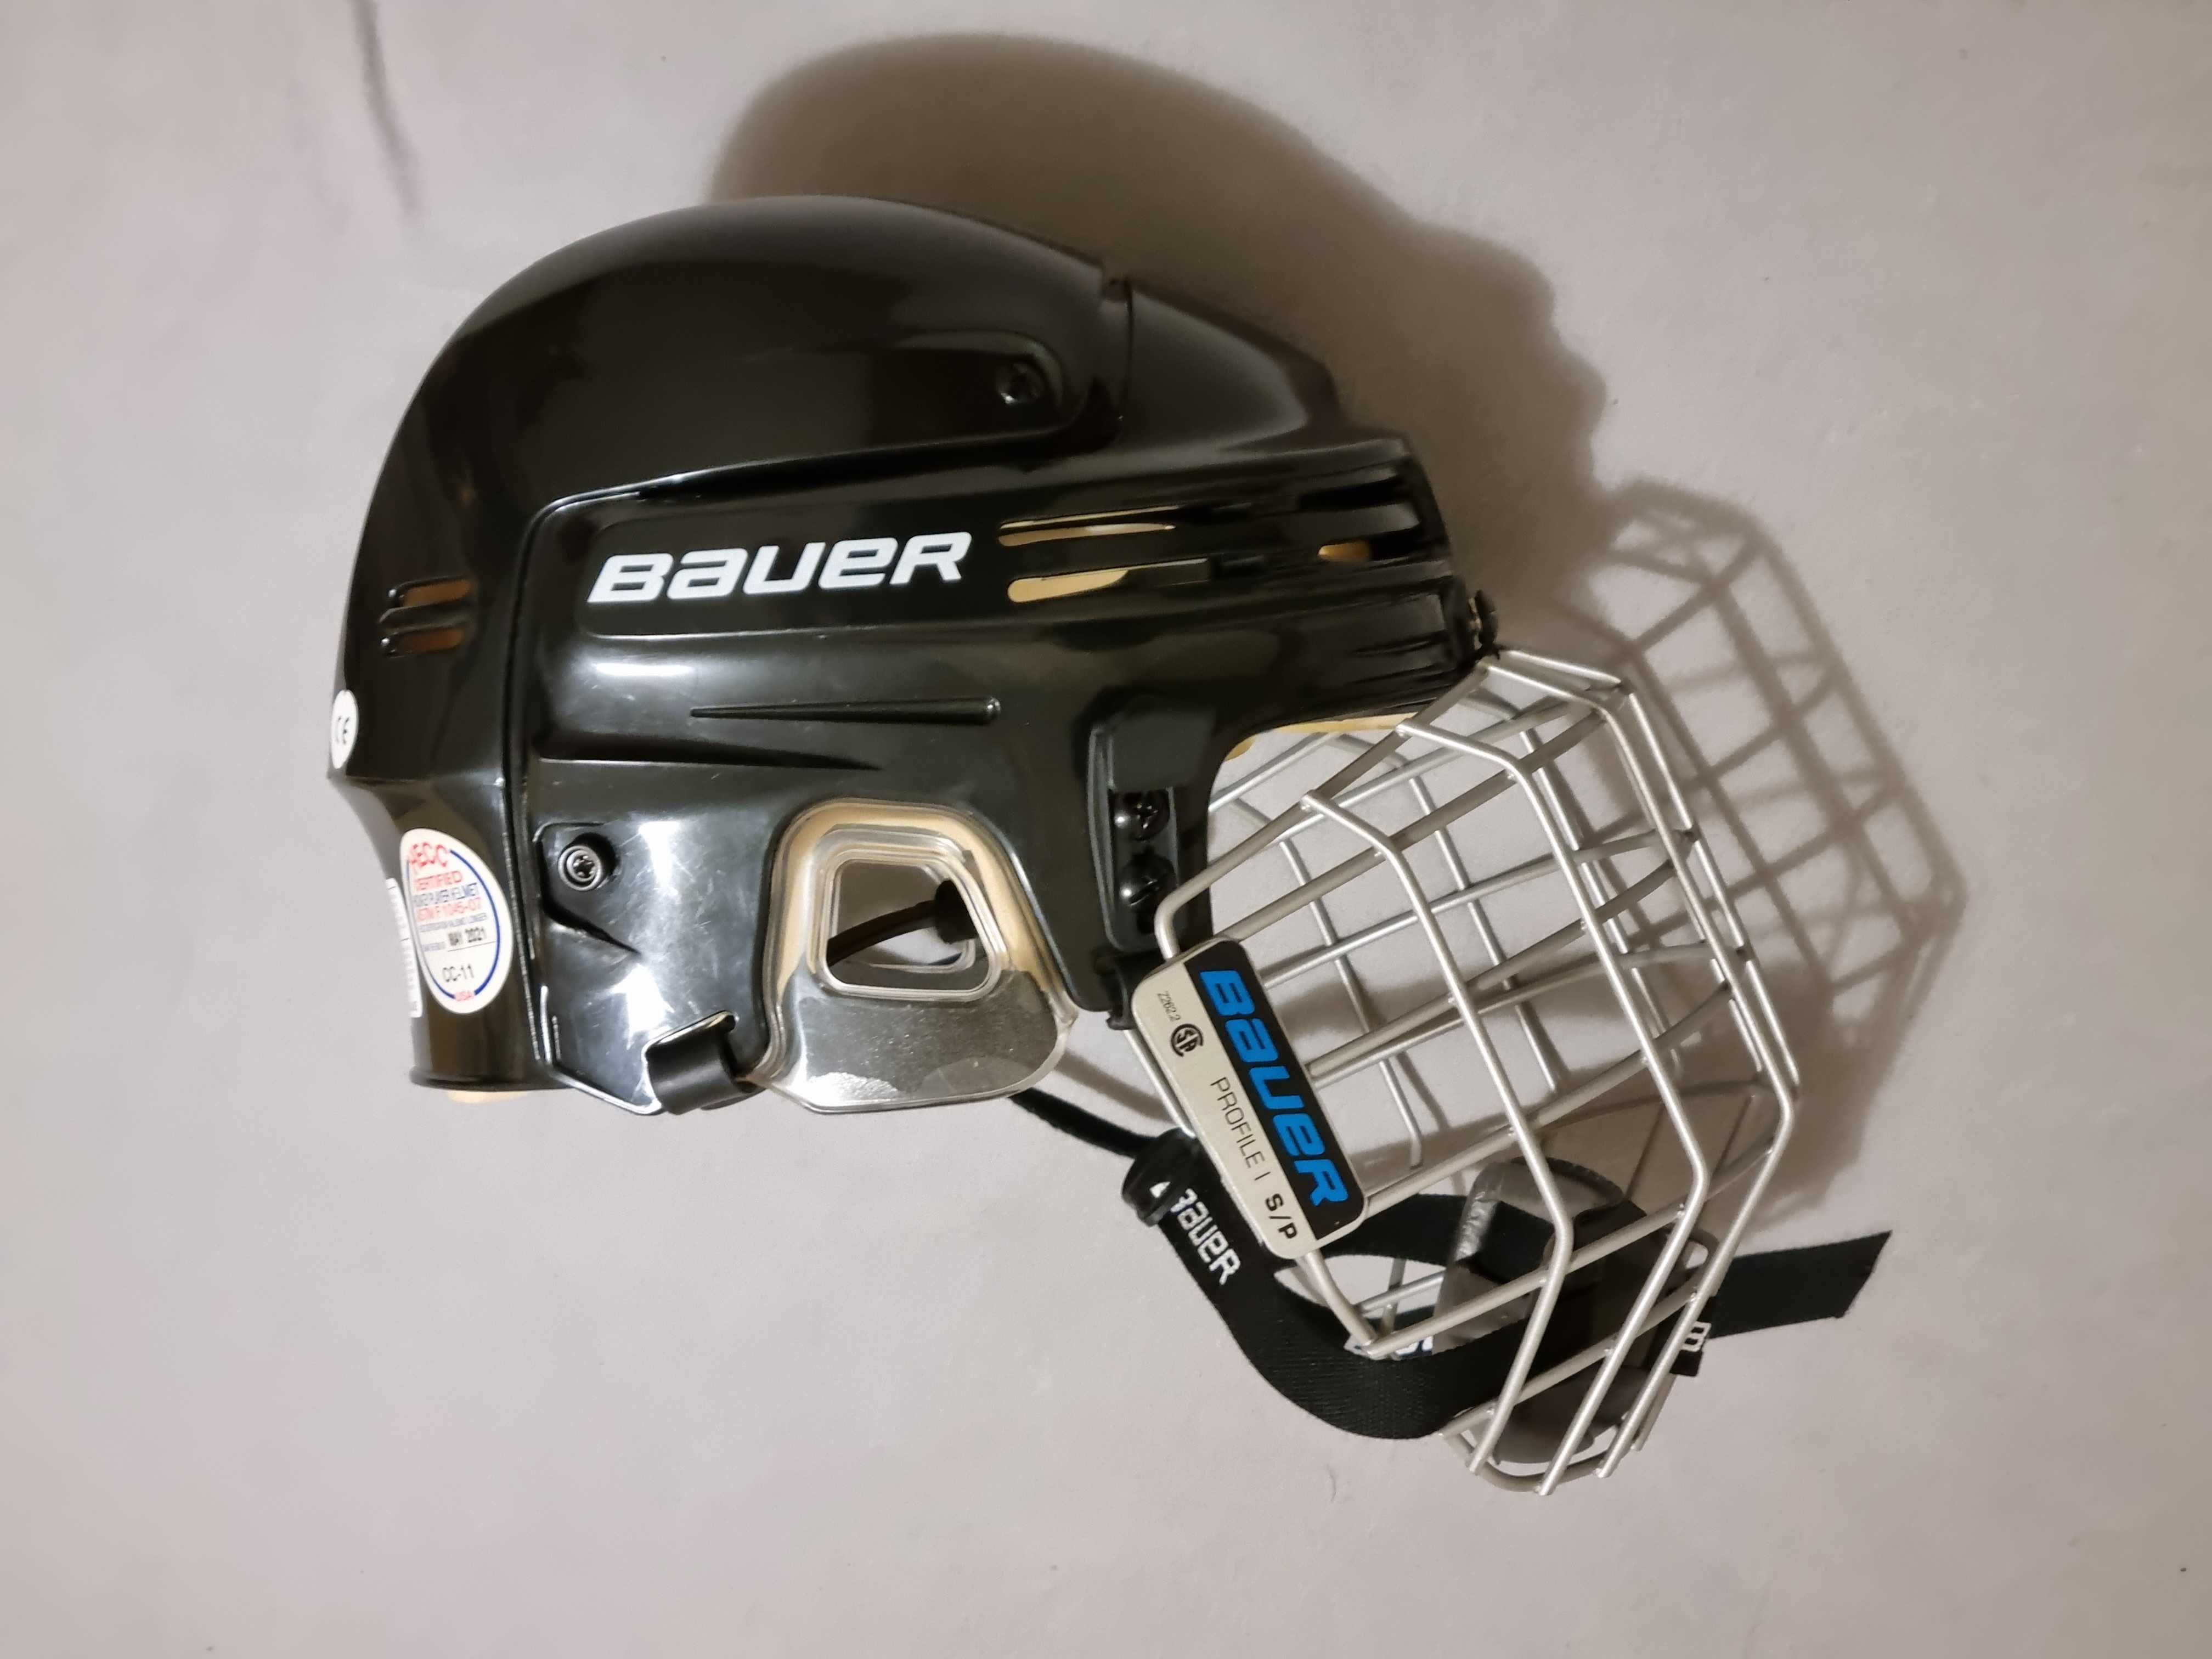 Kask hokejowy Bauer 4500 (rozm. S) z kratownicą Bauer Profile I FM